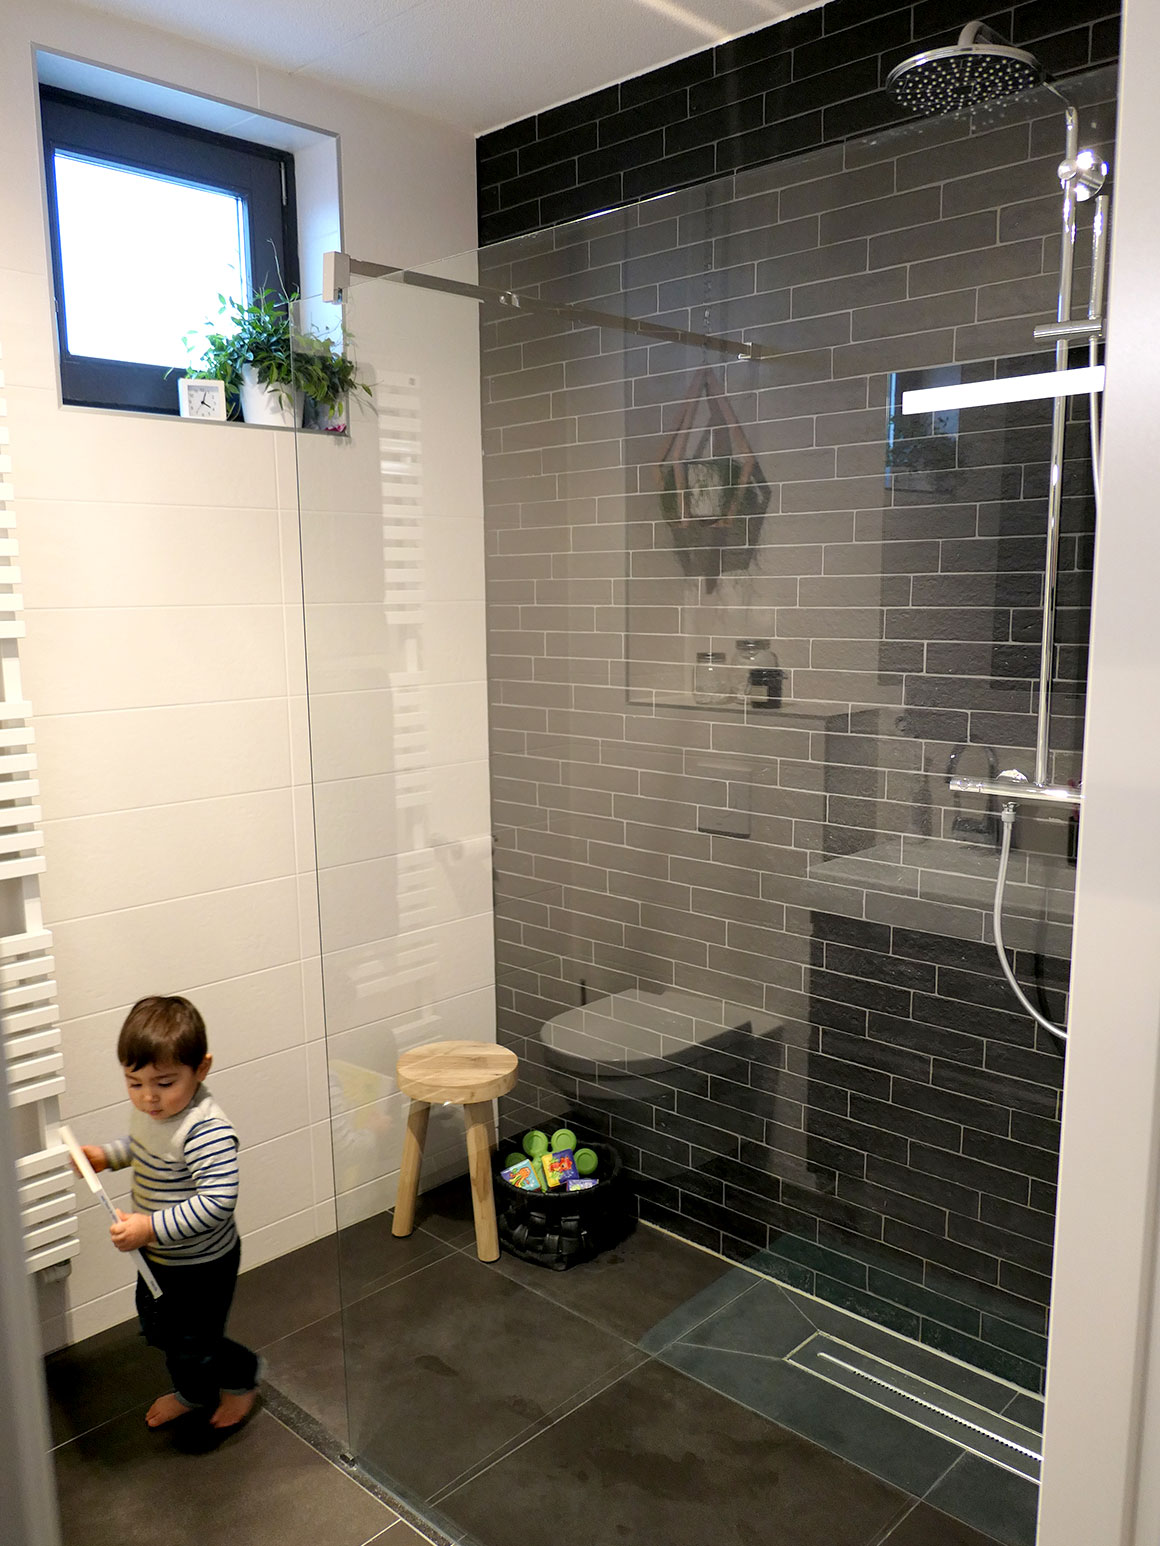 Ons nieuwe huis #20: De badkamer